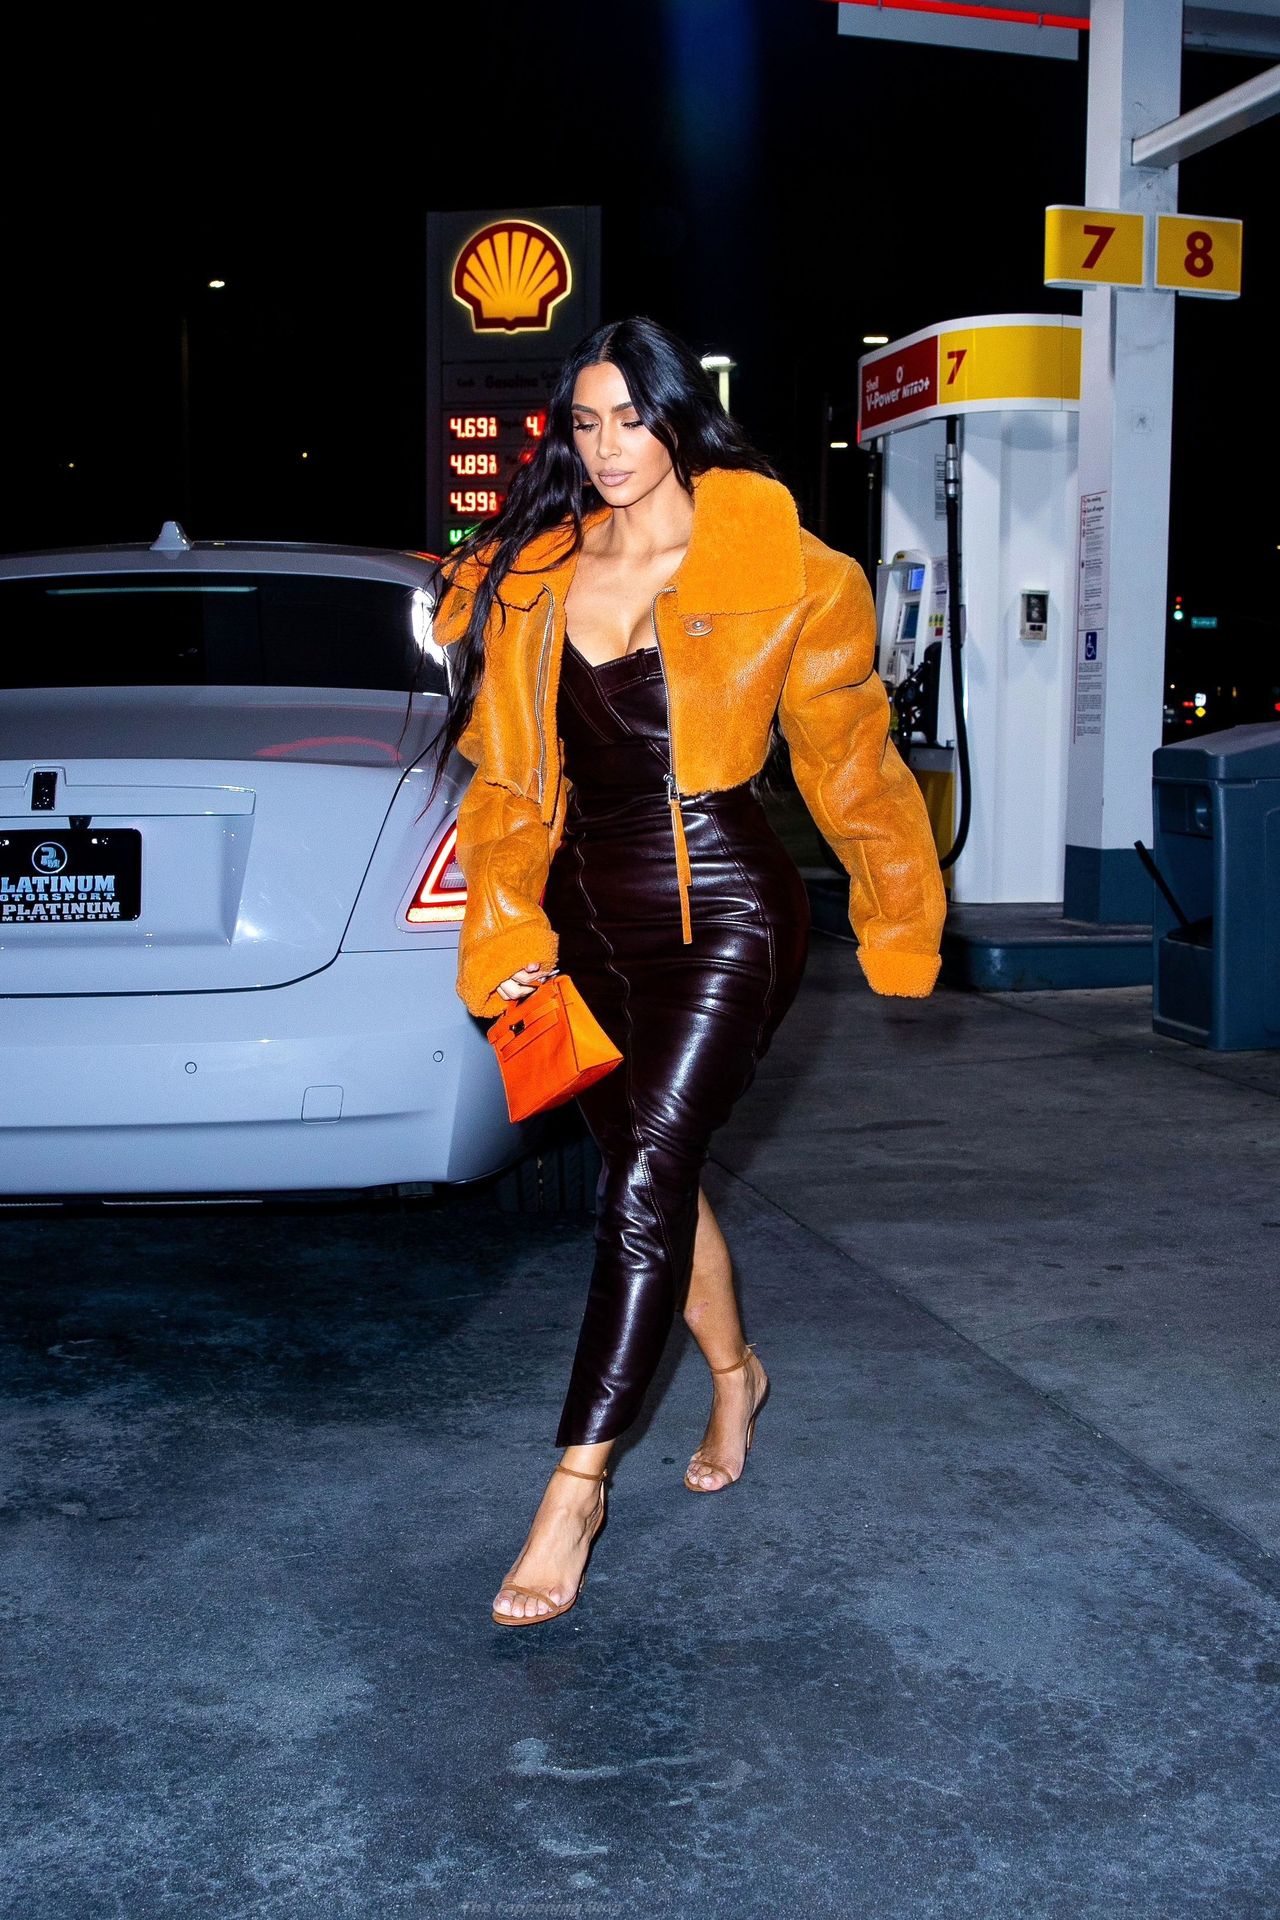 Kim-Kardashian-Sexy-The-Fappening-Blog-6.jpg